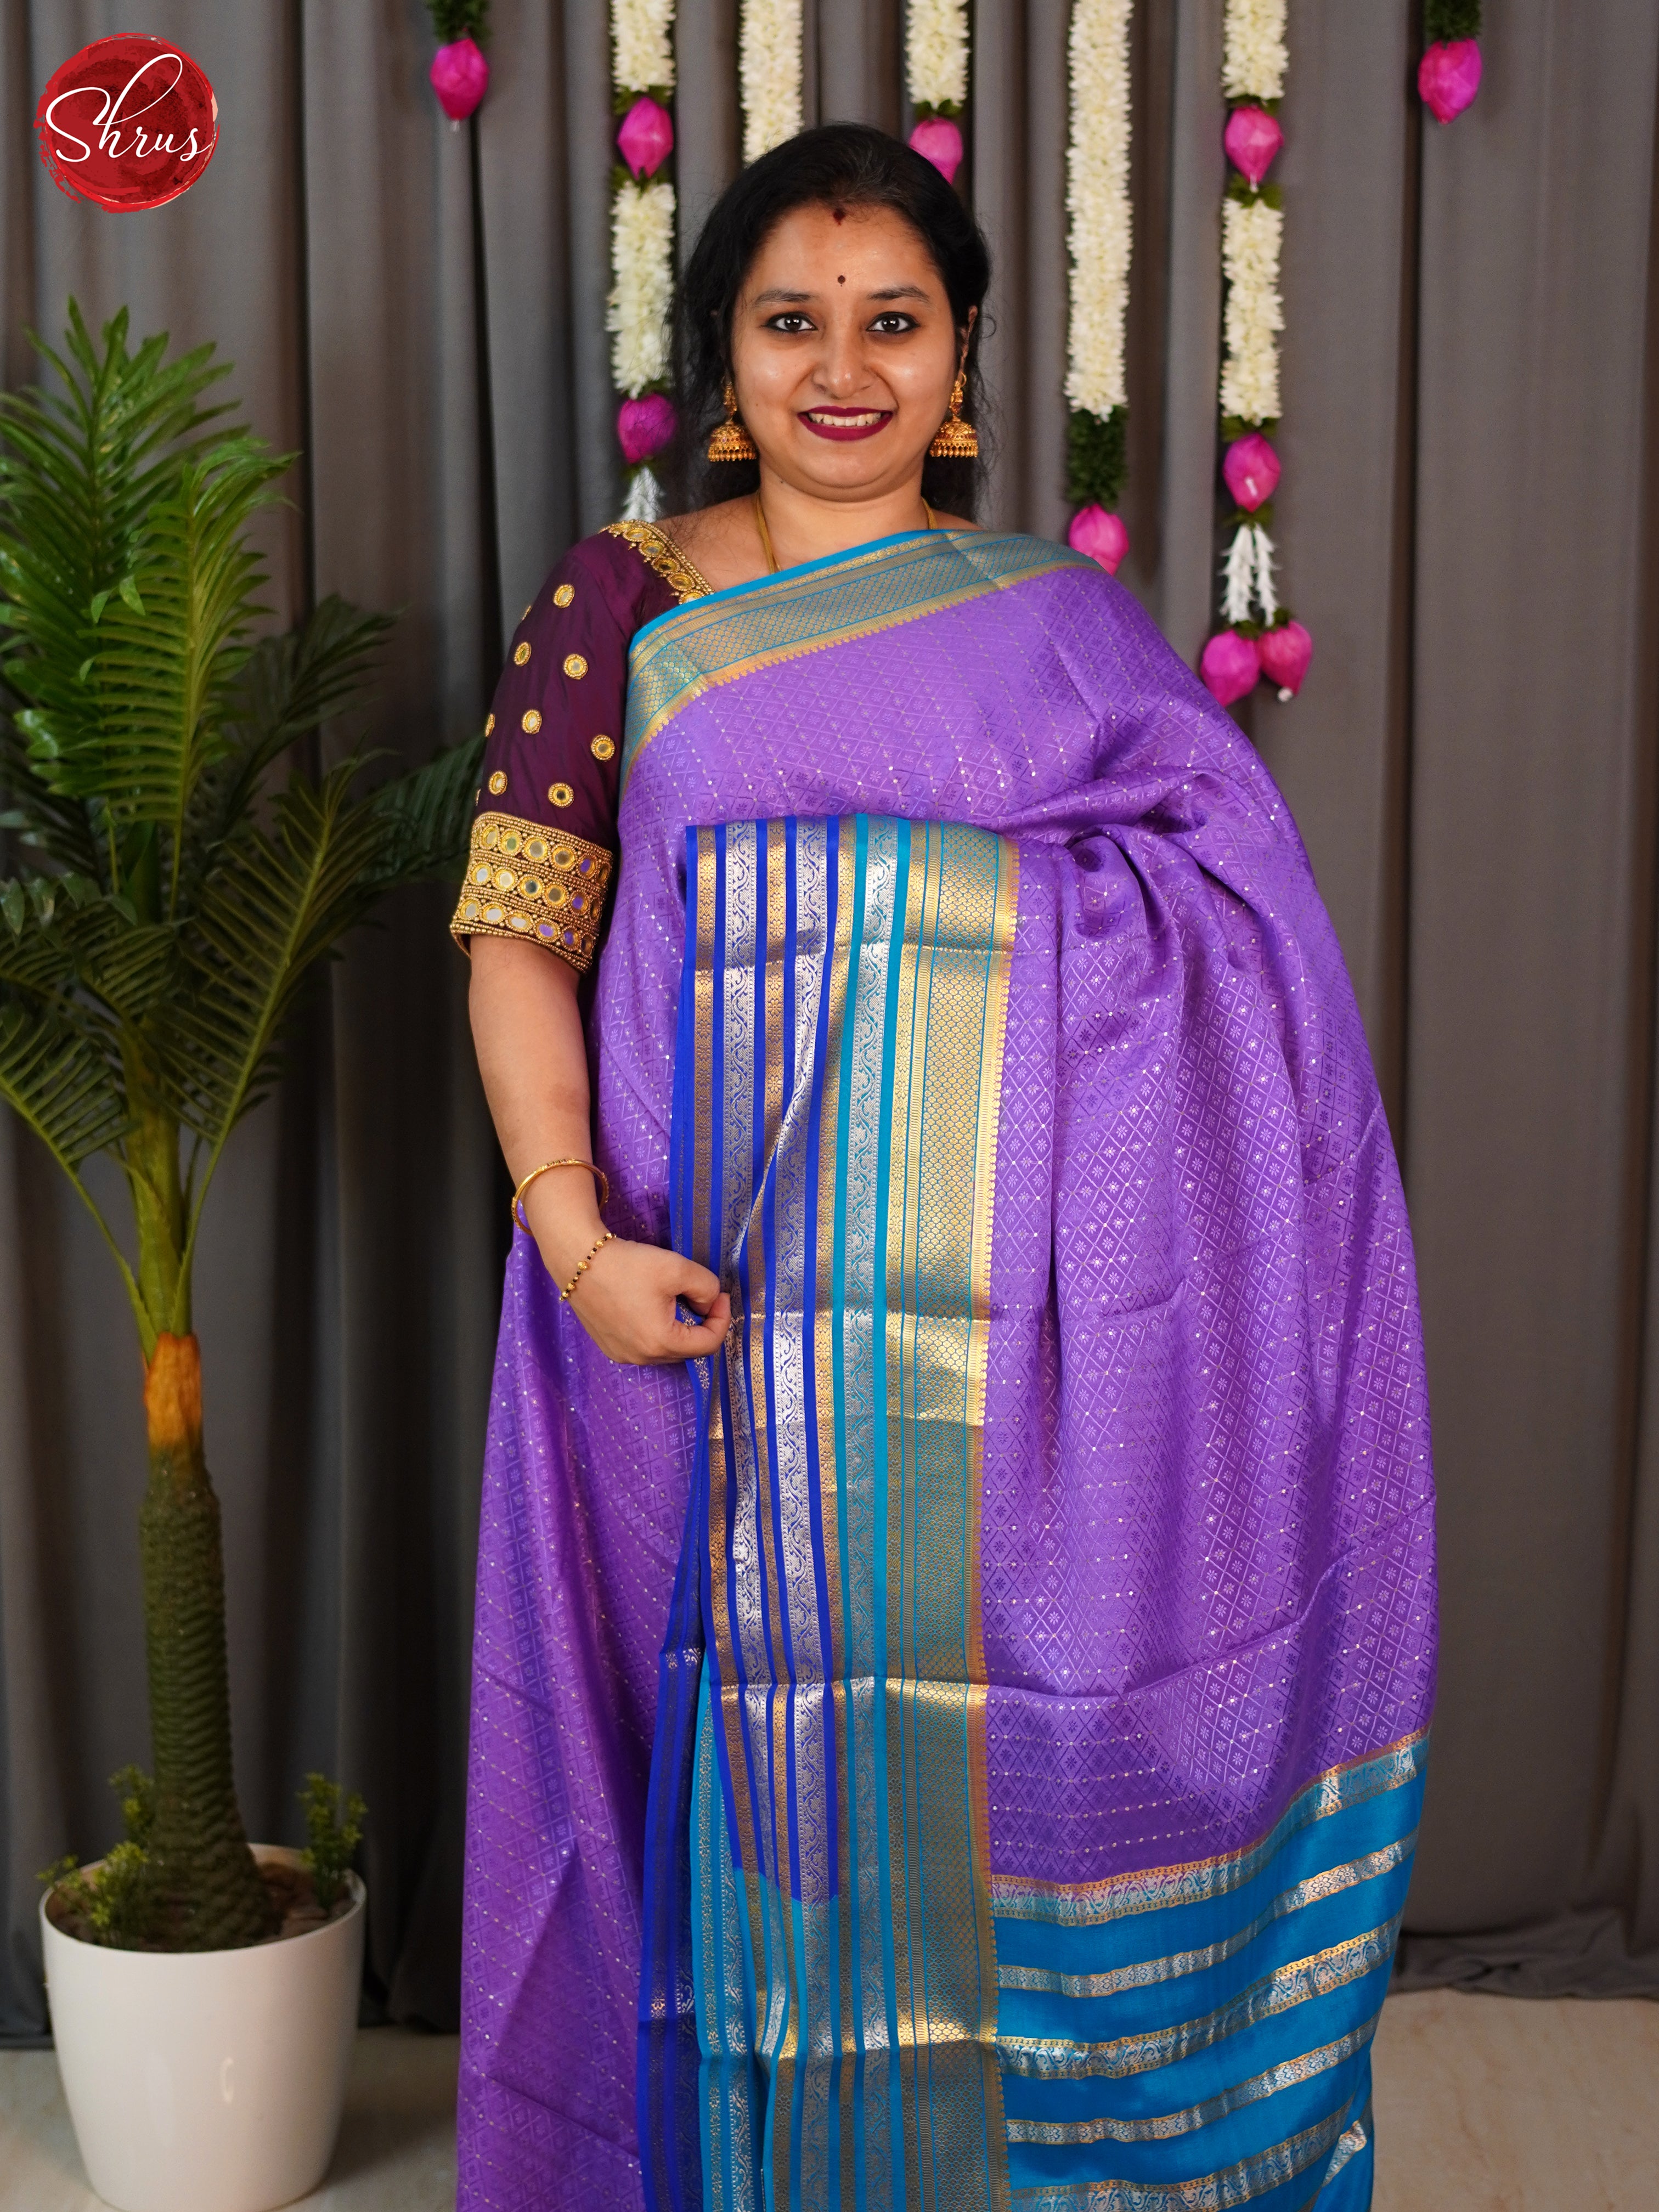 Lavender & Blue- Mysore Silk Saree - Shop on ShrusEternity.com